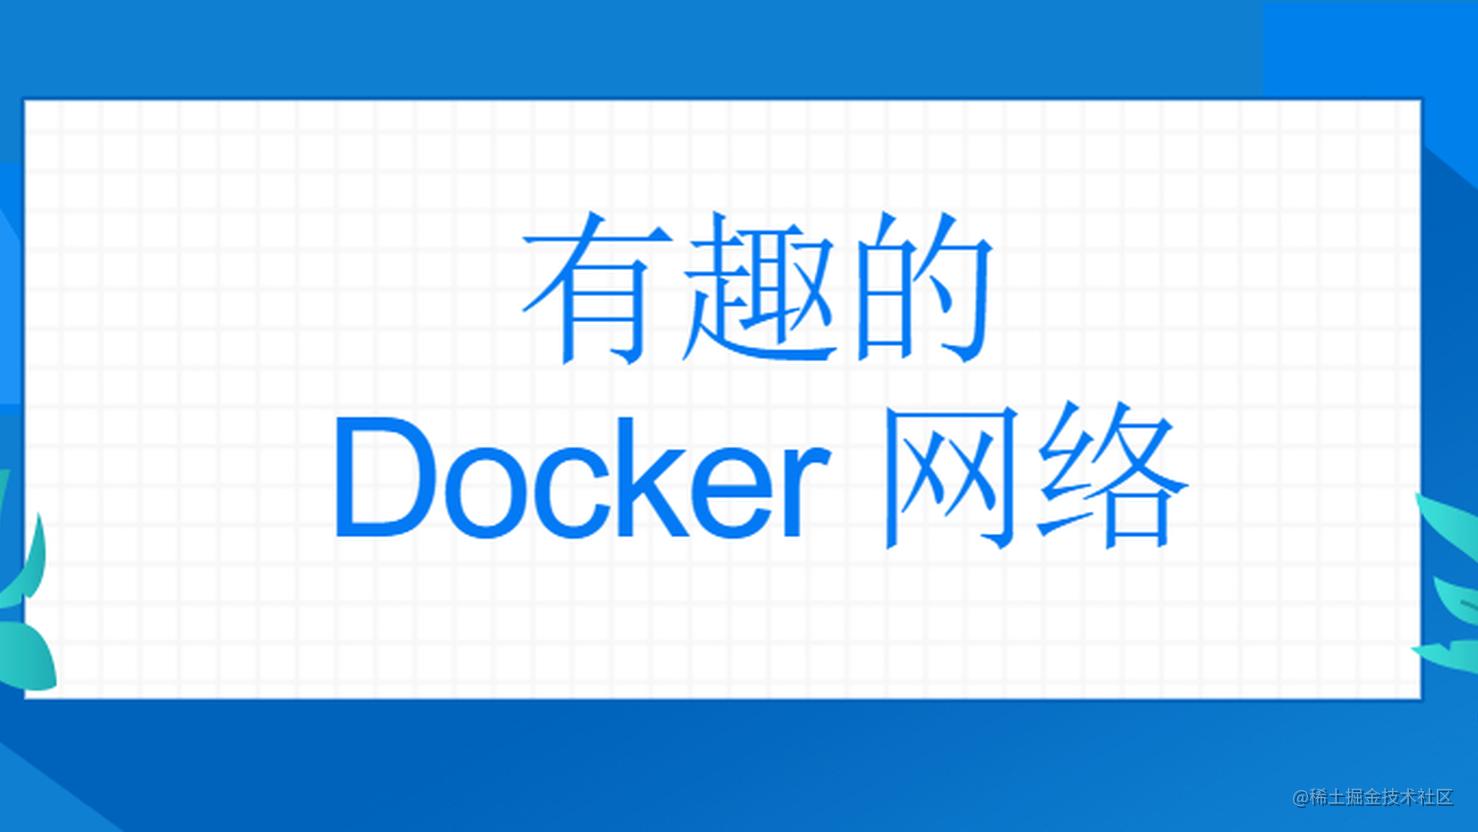 【Docker 系列】docker 学习八，有趣的 Docker 网络